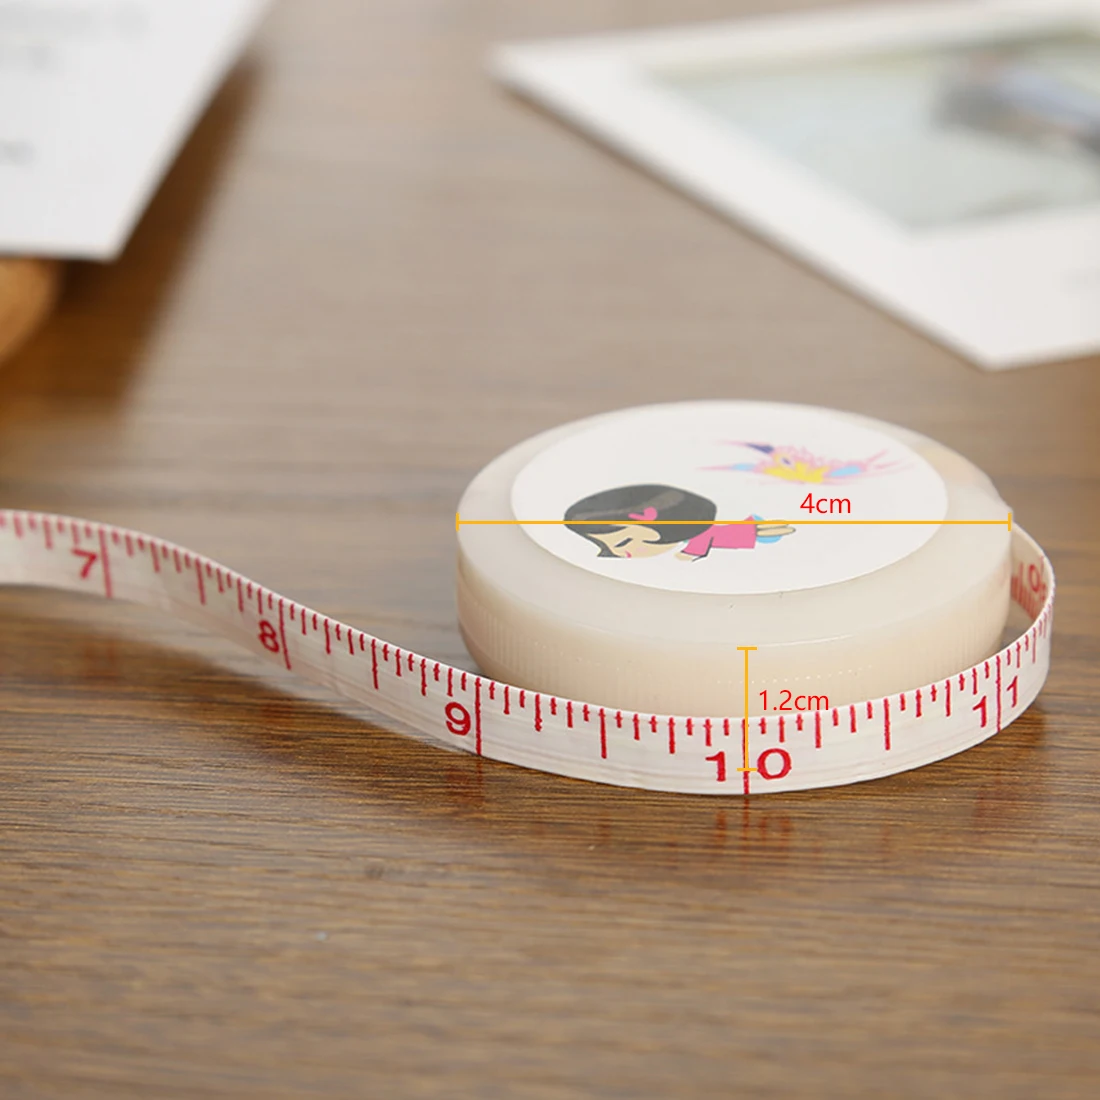 Измерьте тело измеряя гибкую линейку 1 шт. 1,5 м швейная линейка метр прекрасный измерительный инструмент лента с рисунками индивидуальные измерения